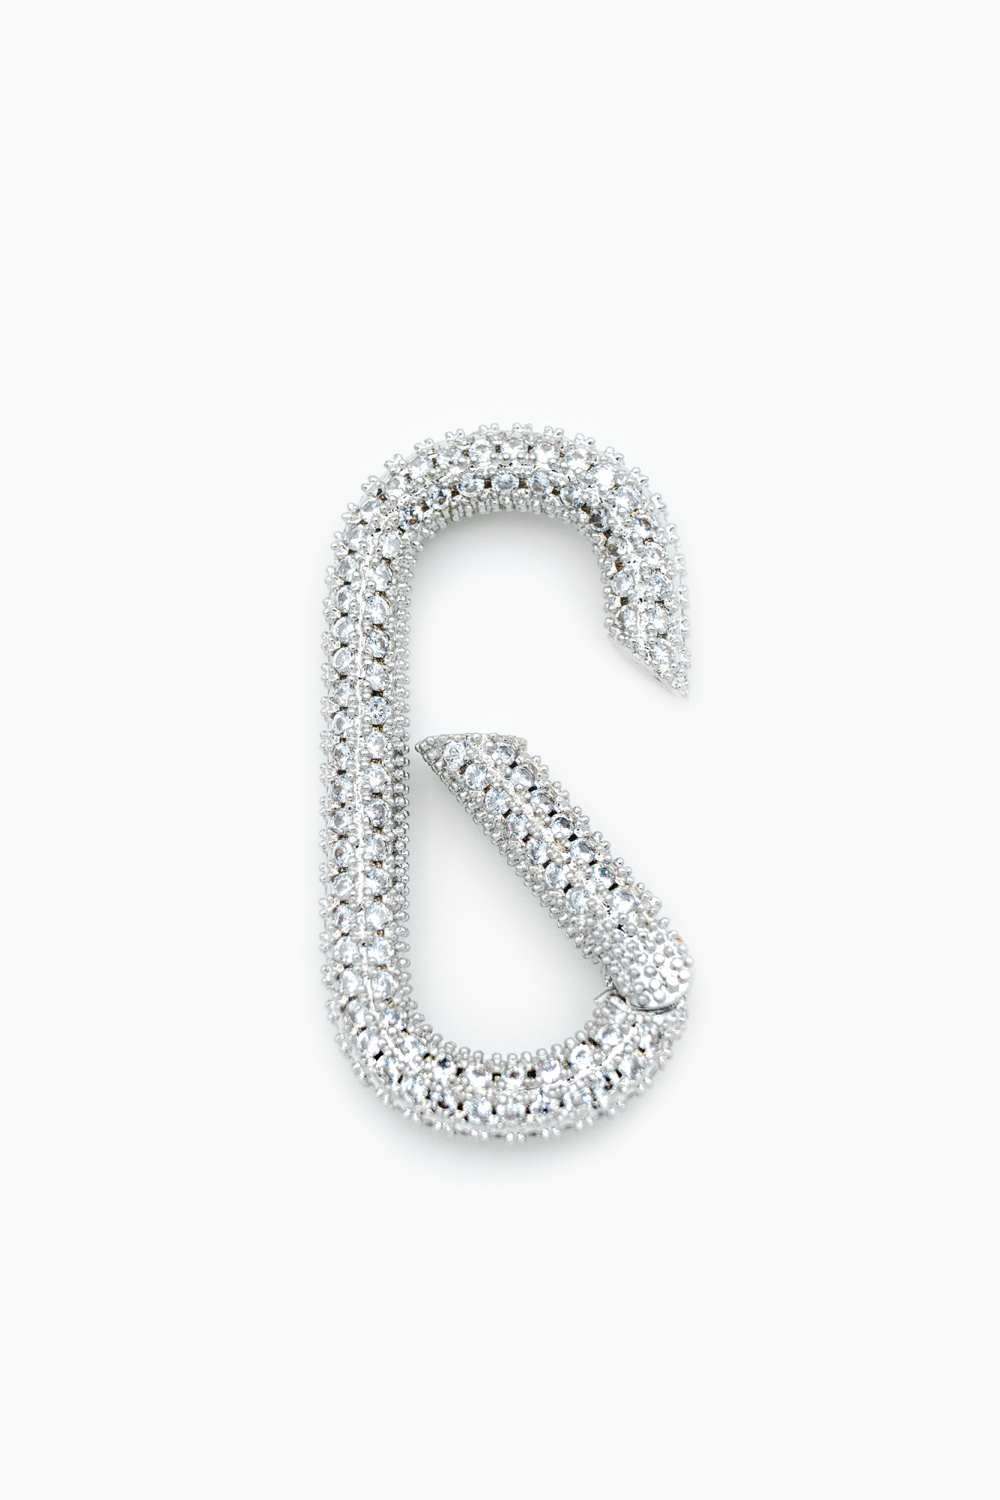 Jewellery Concept: Lock Zirconias Prata